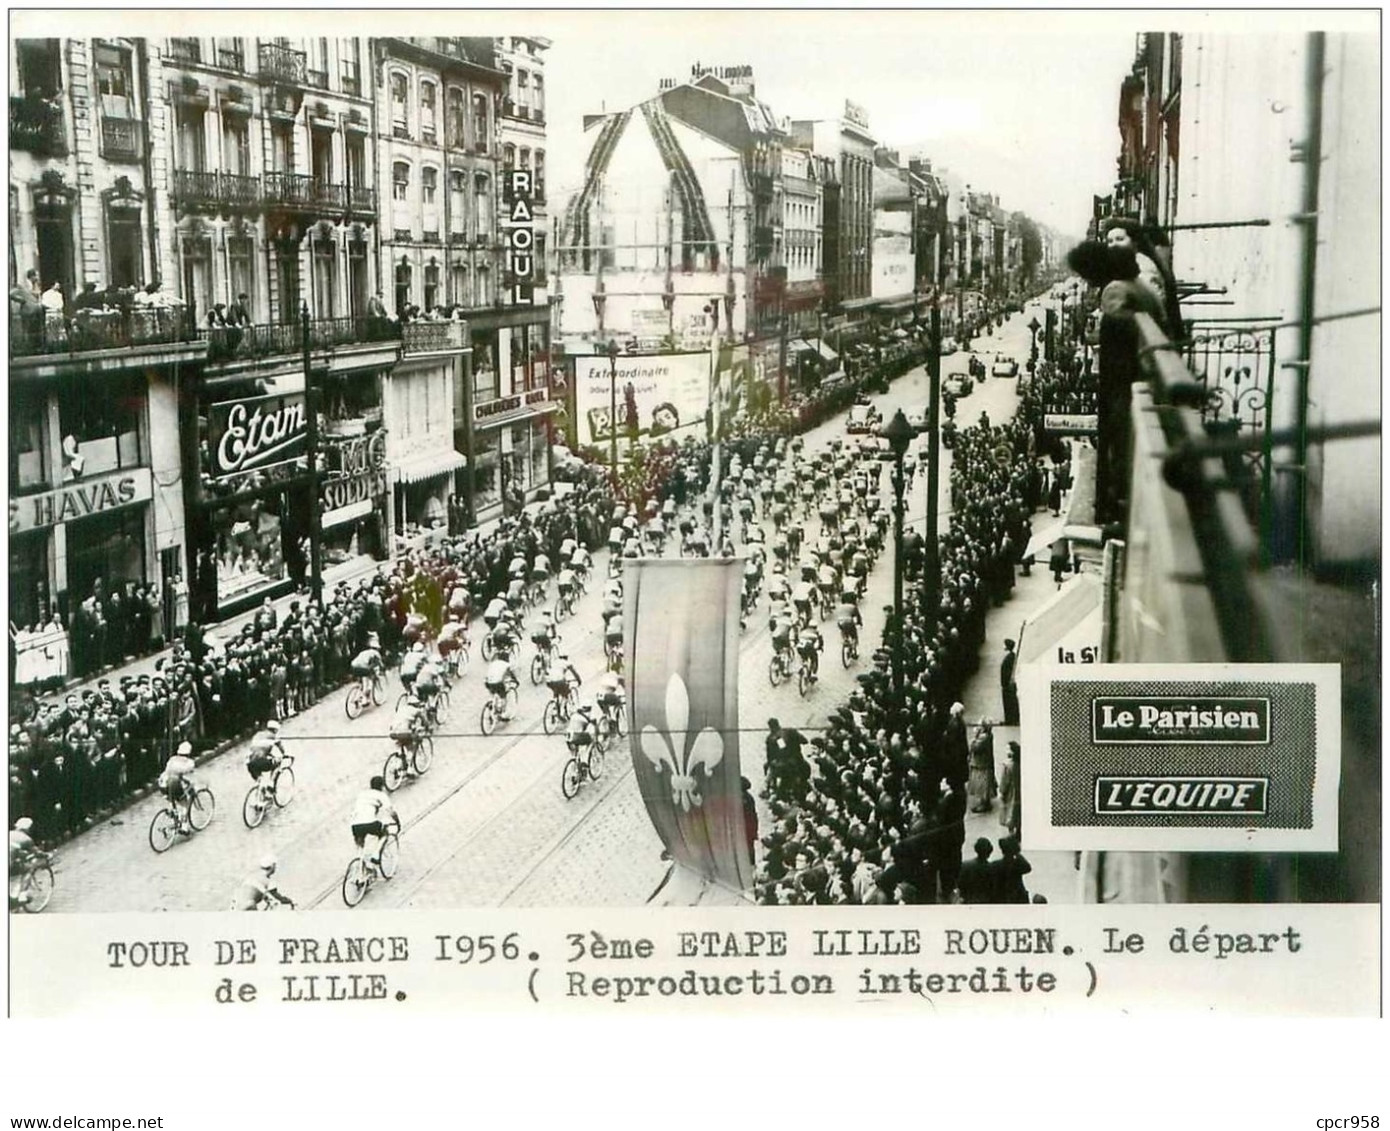 PHOTO DE PRESSE ORIGINALE TOUR DE FRANCE 1956.20X15.3eme ETAPE LILLE ROUEN.LE DEPART DE LILLE.n°18658 - Cycling